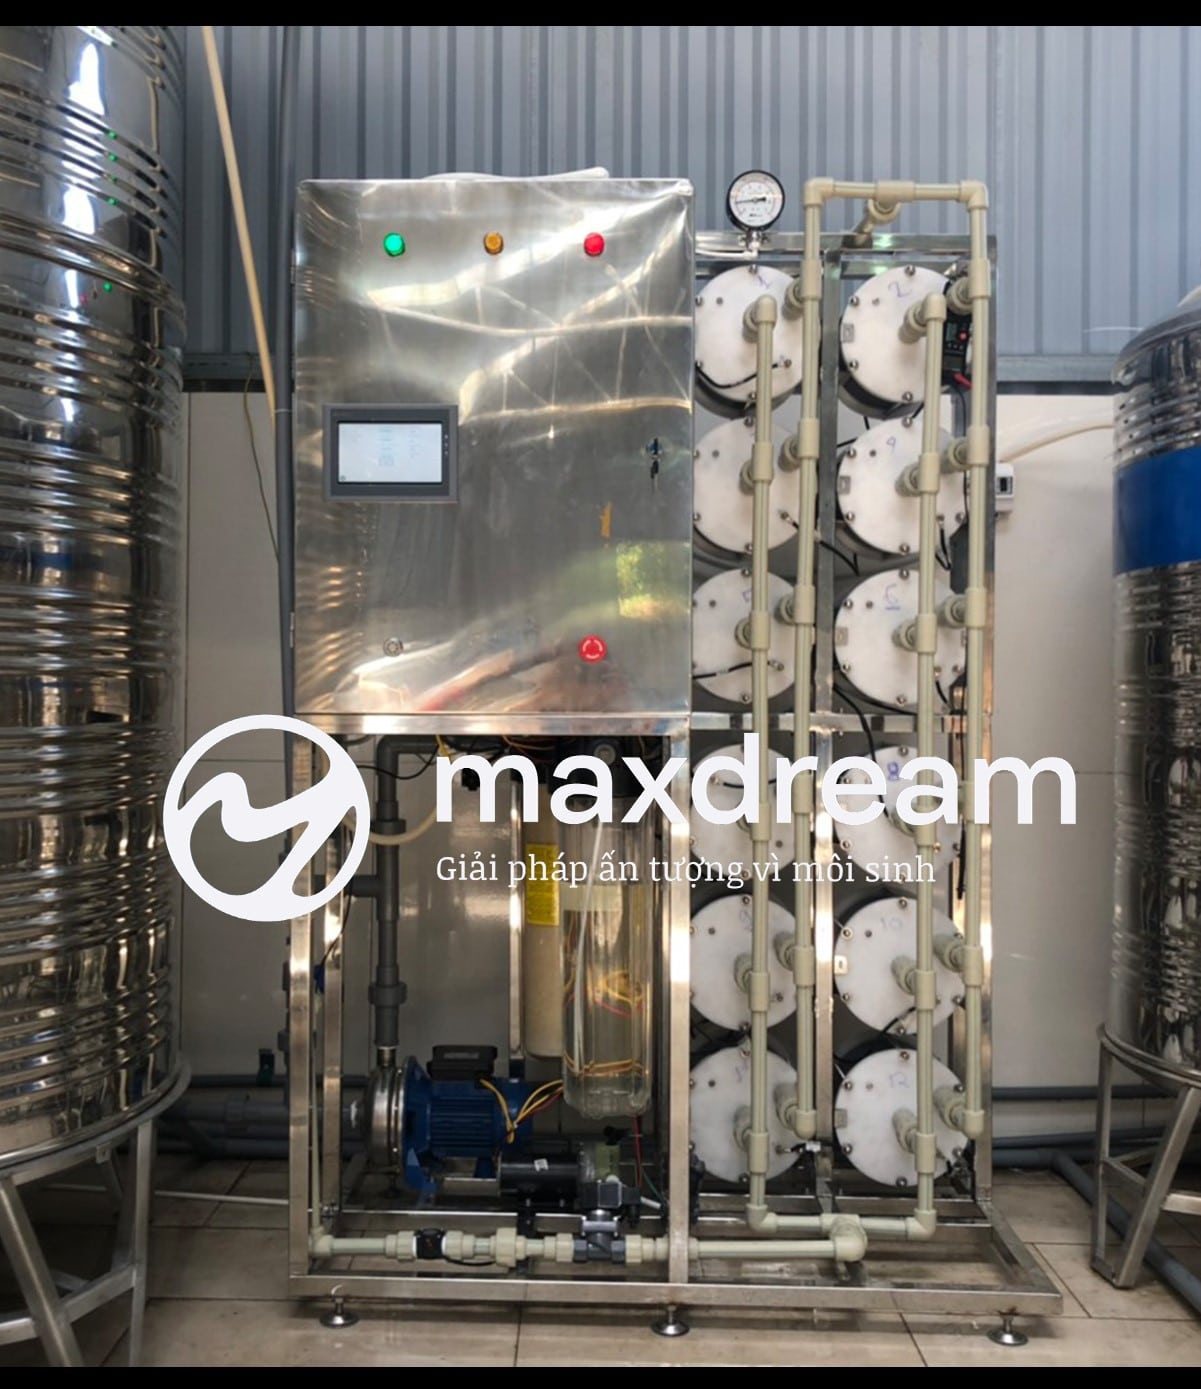 Hình ảnh máy lọc nước công nghiệp MaxDream